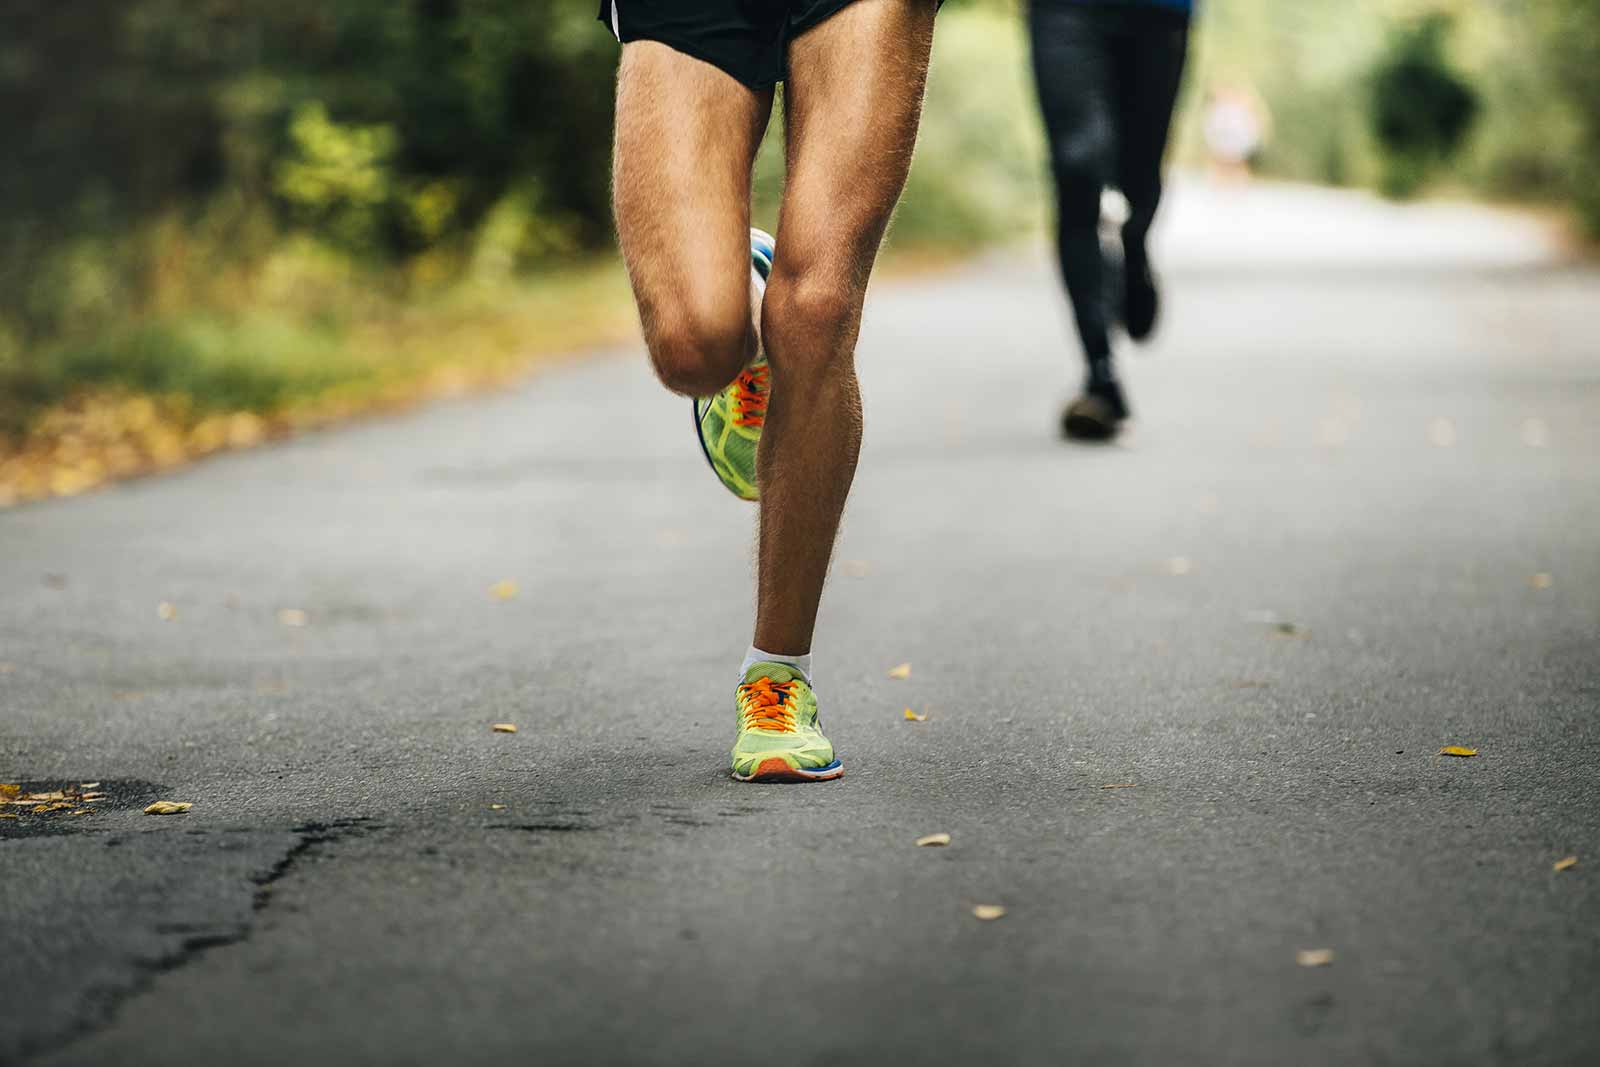 跑步是造成膝蓋痛、腳痛的原因嗎?